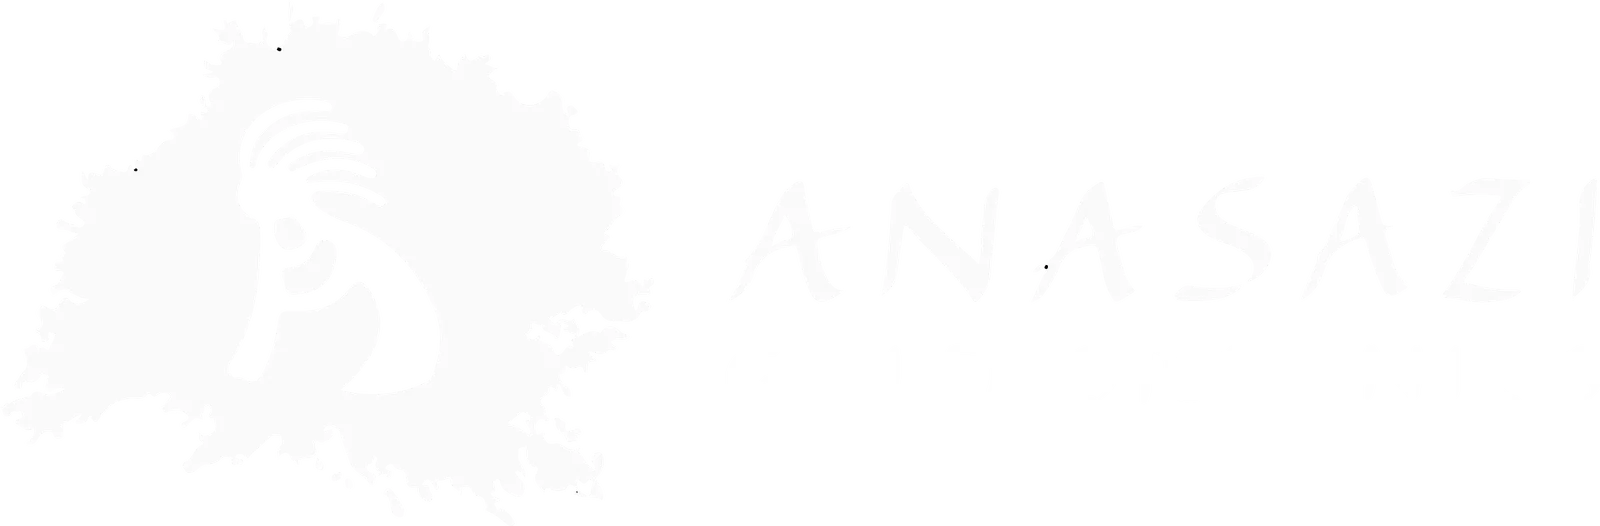 Anasazi Gold Organics Wholesale